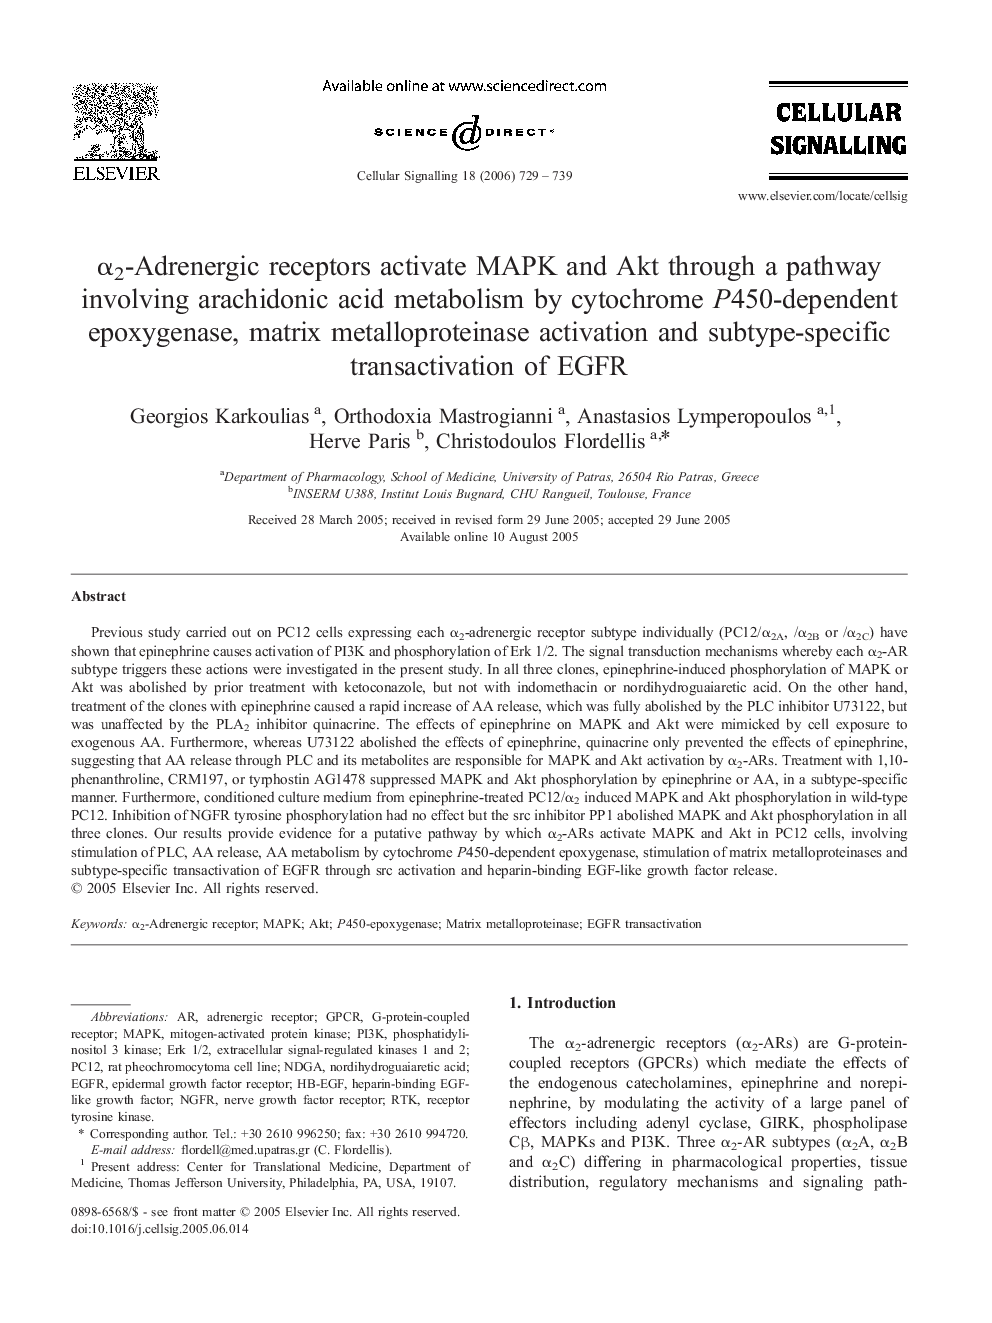 α2-Adrenergic receptors activate MAPK and Akt through a pathway involving arachidonic acid metabolism by cytochrome P450-dependent epoxygenase, matrix metalloproteinase activation and subtype-specific transactivation of EGFR